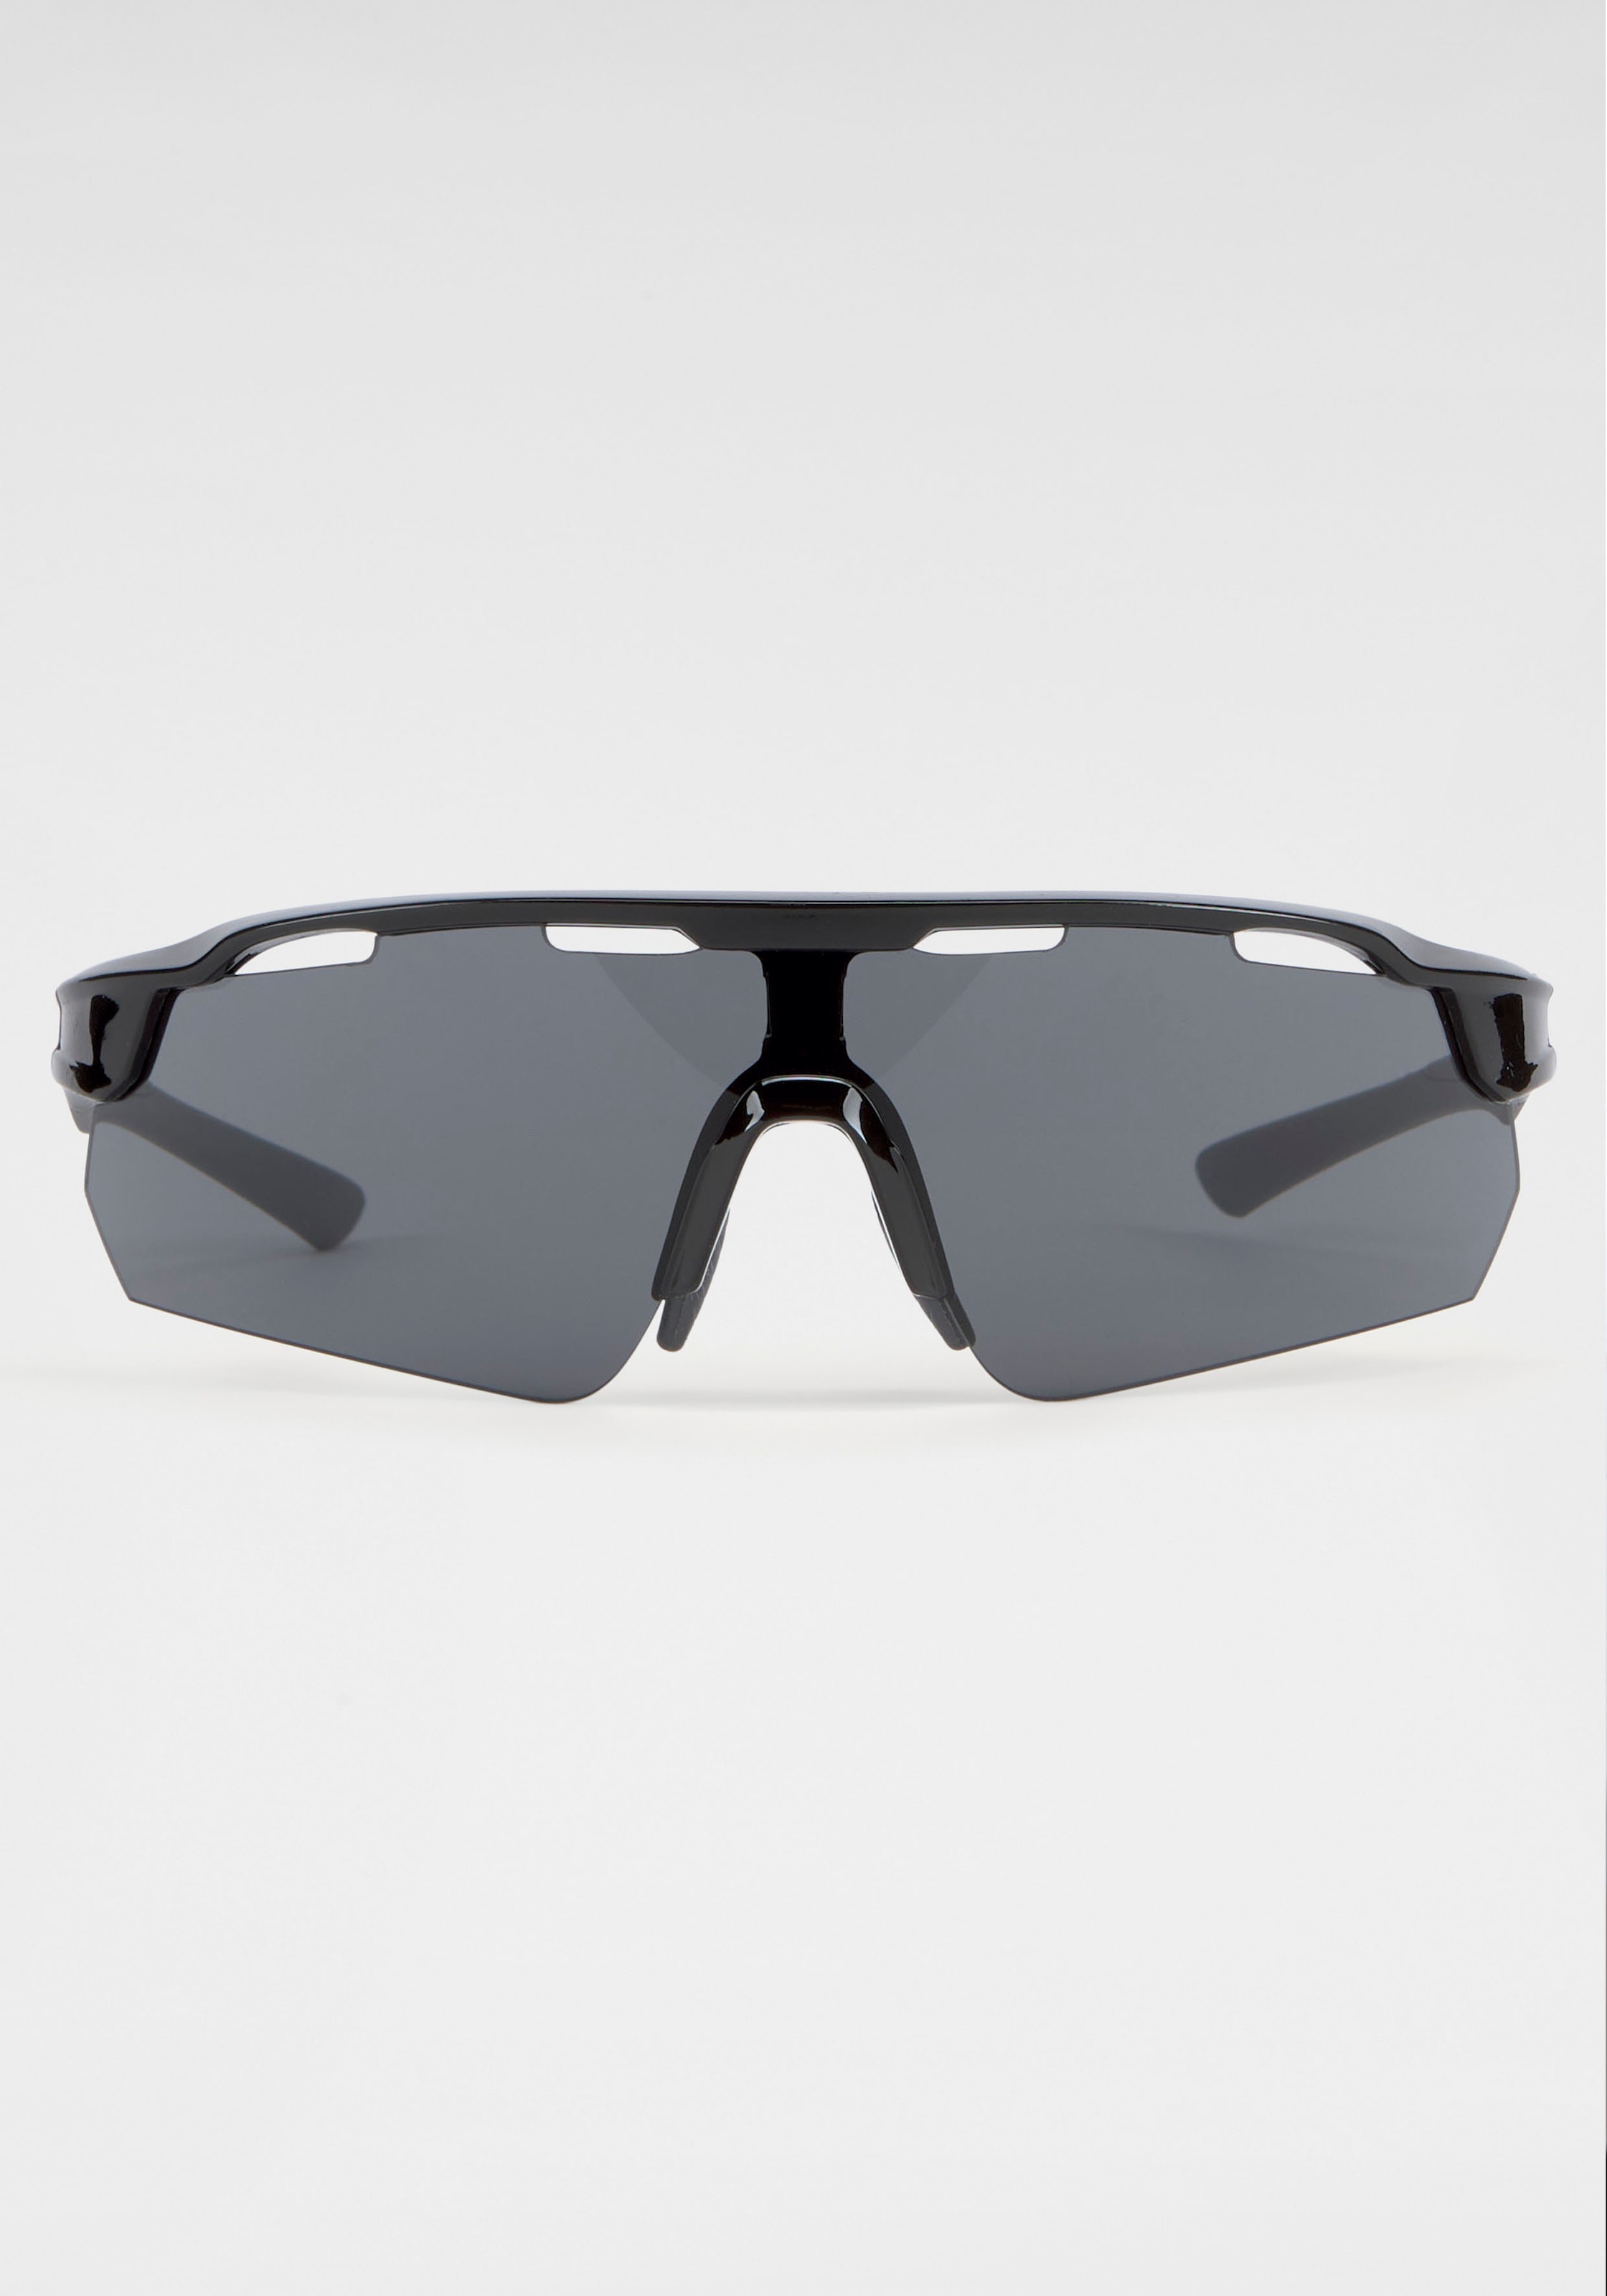 BACK BLACK IN Sonnenbrille, Gläsern bestellen Eyewear mit gebogenen